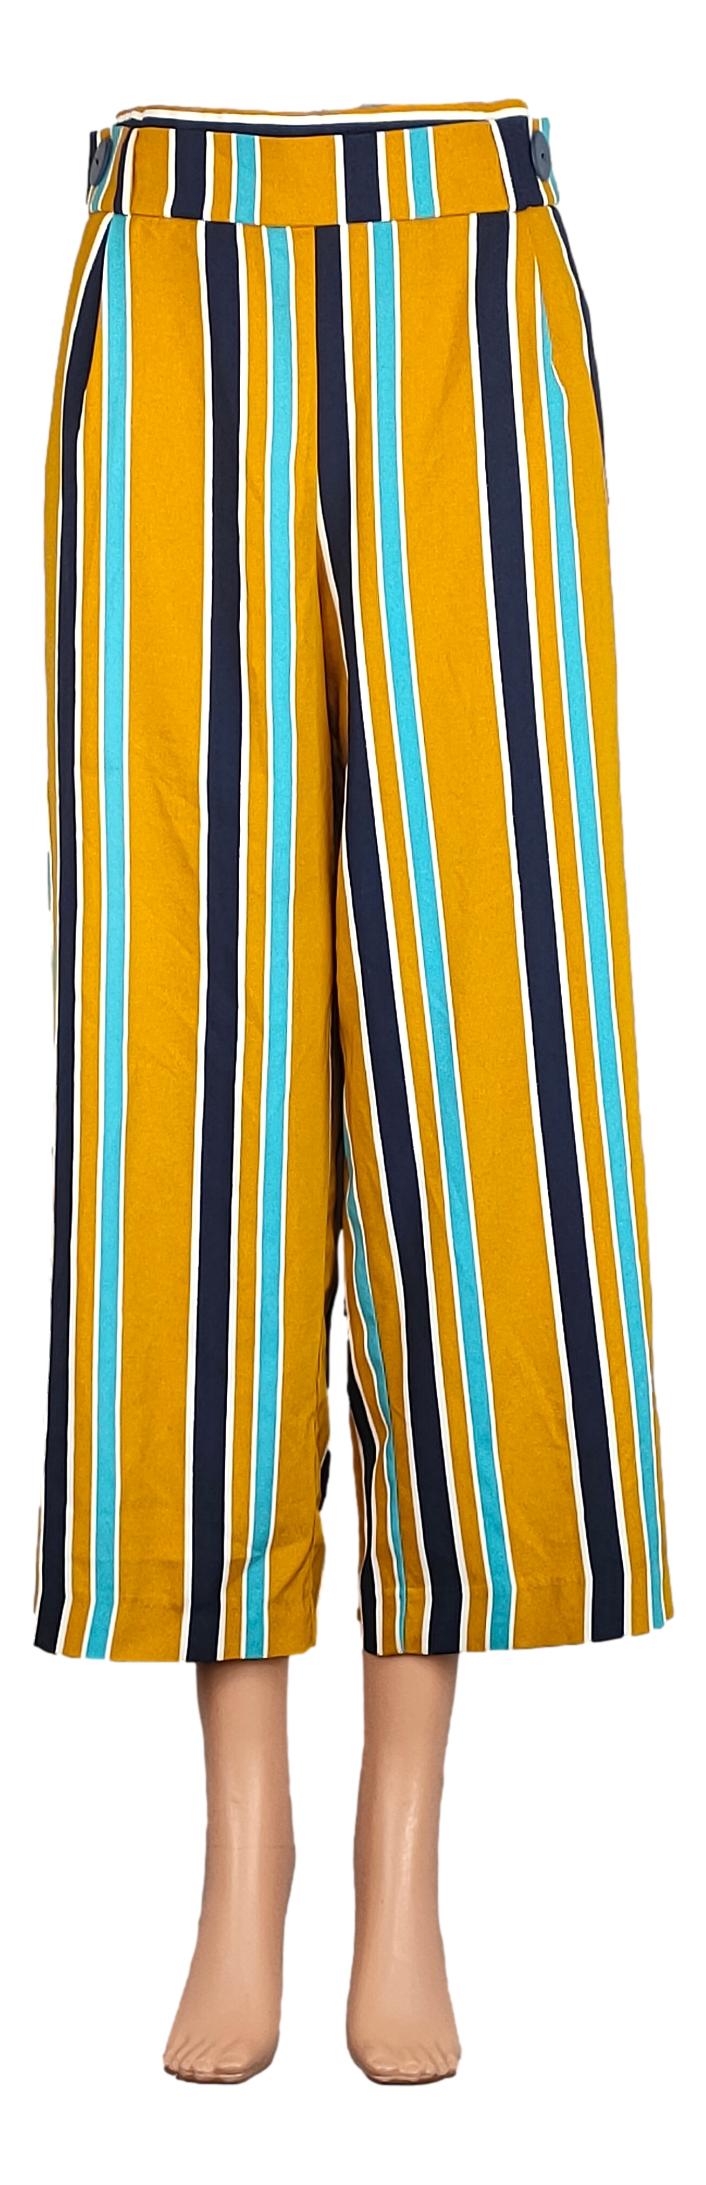 Pantalon Zara - Taille 42